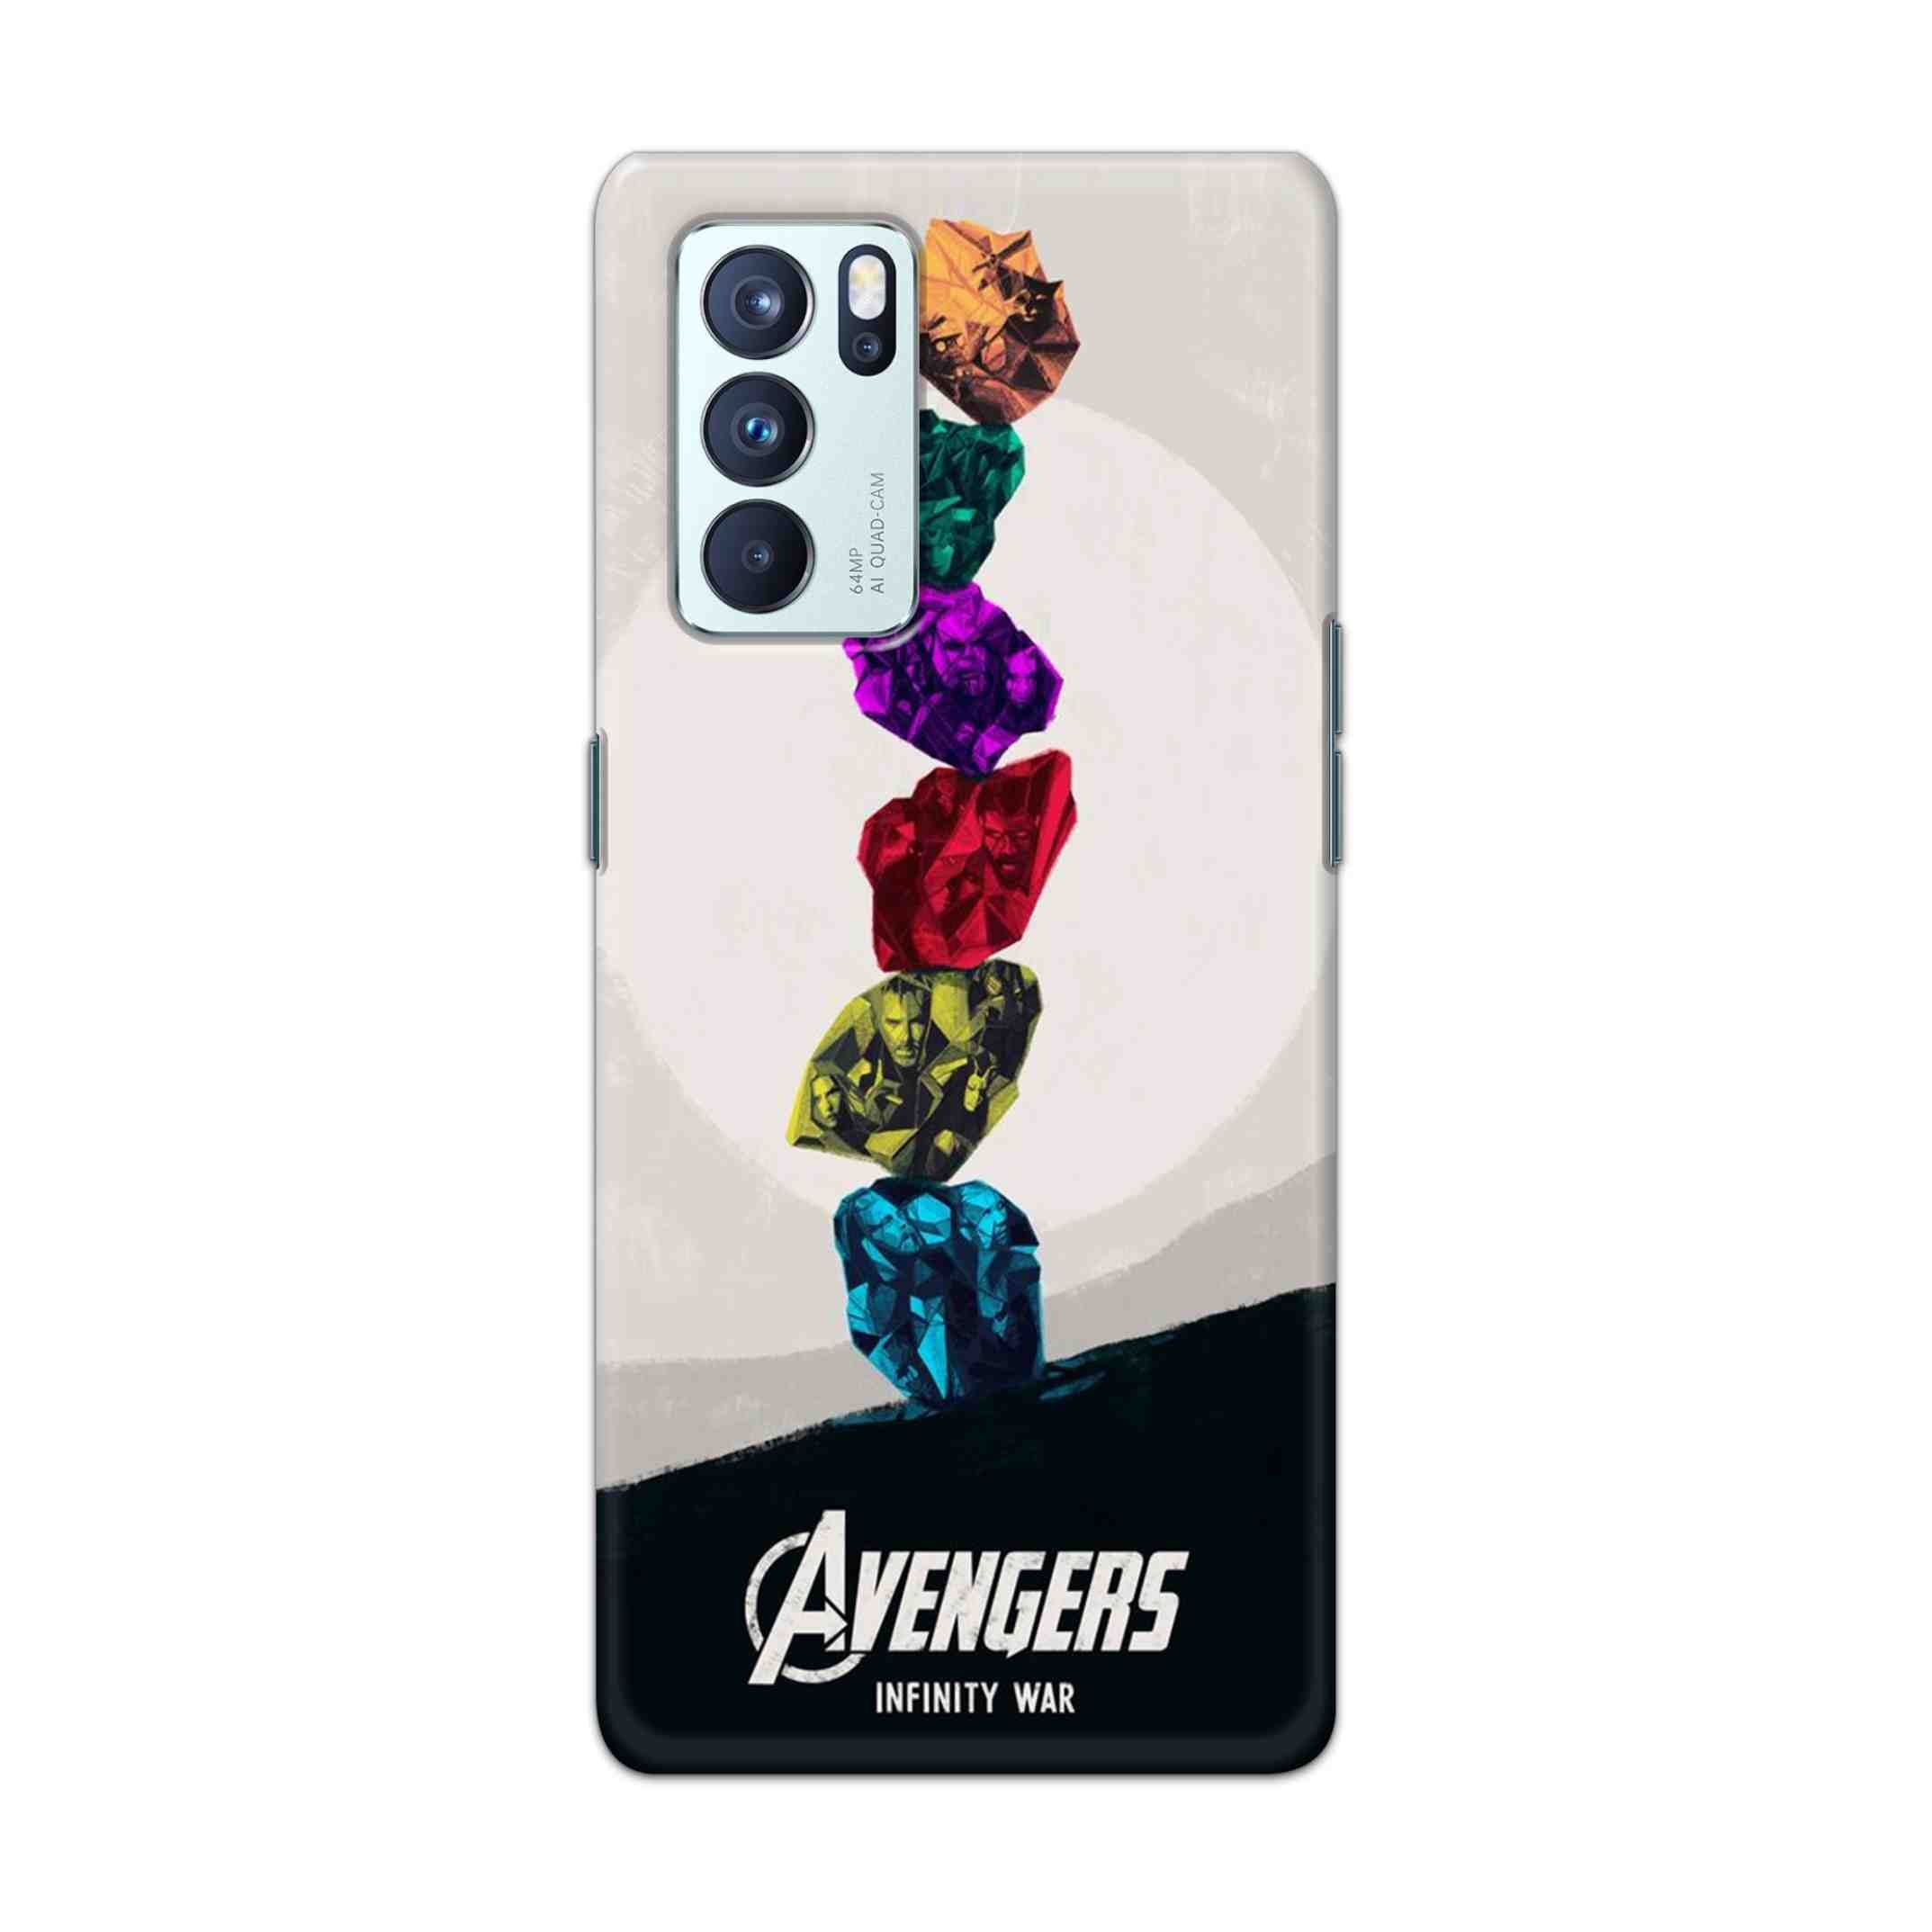 Buy Avengers Stone Hard Back Mobile Phone Case Cover For OPPO Reno 6 Pro 5G Online